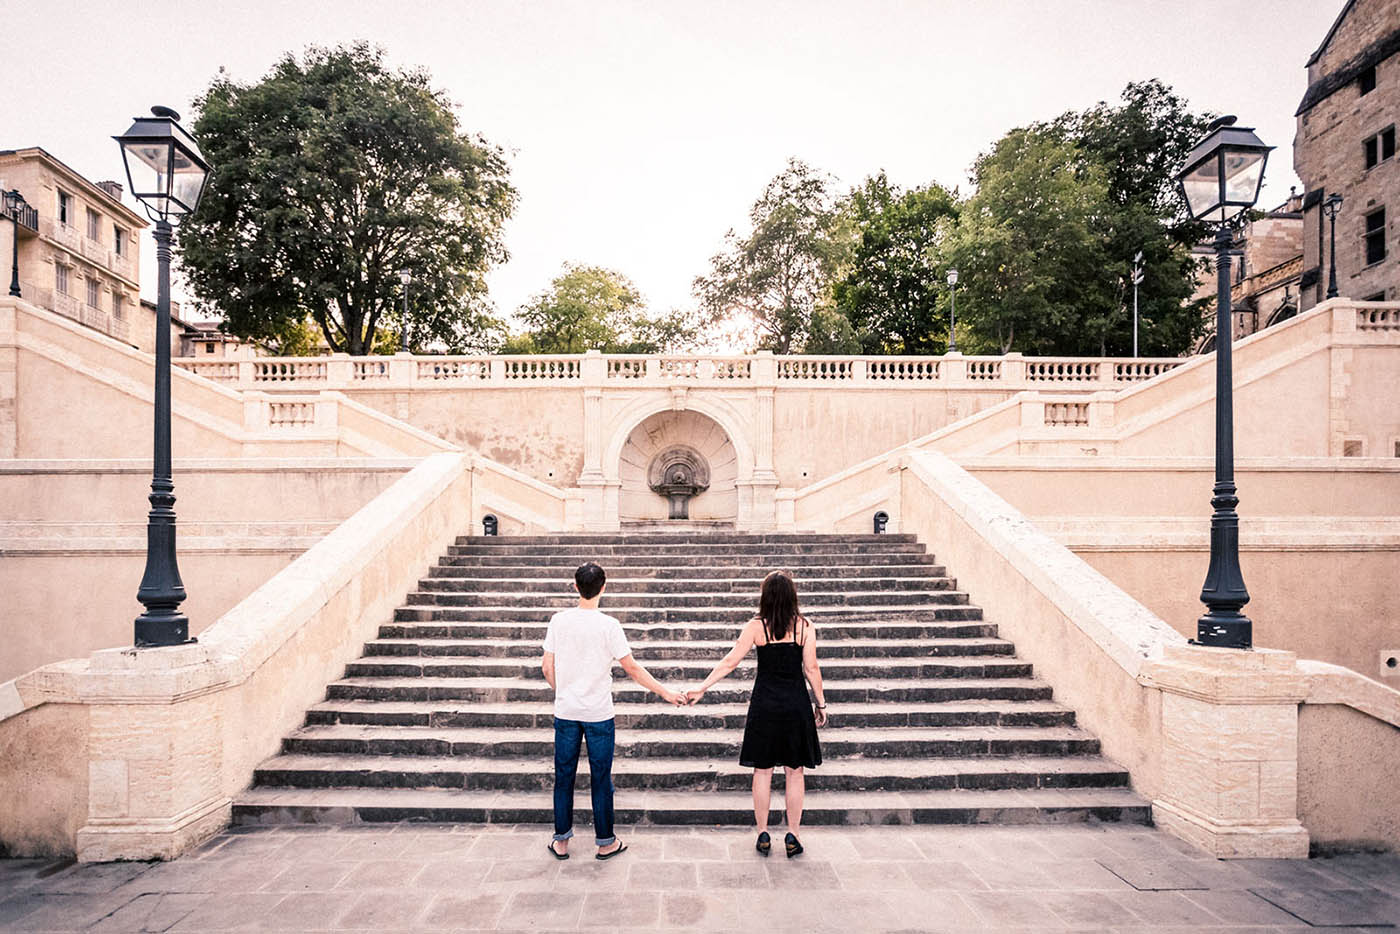 Un couple devant l'escalier monumental d'Auch symbolisant une nouvelle étape de leur vie à franchir : le mariage